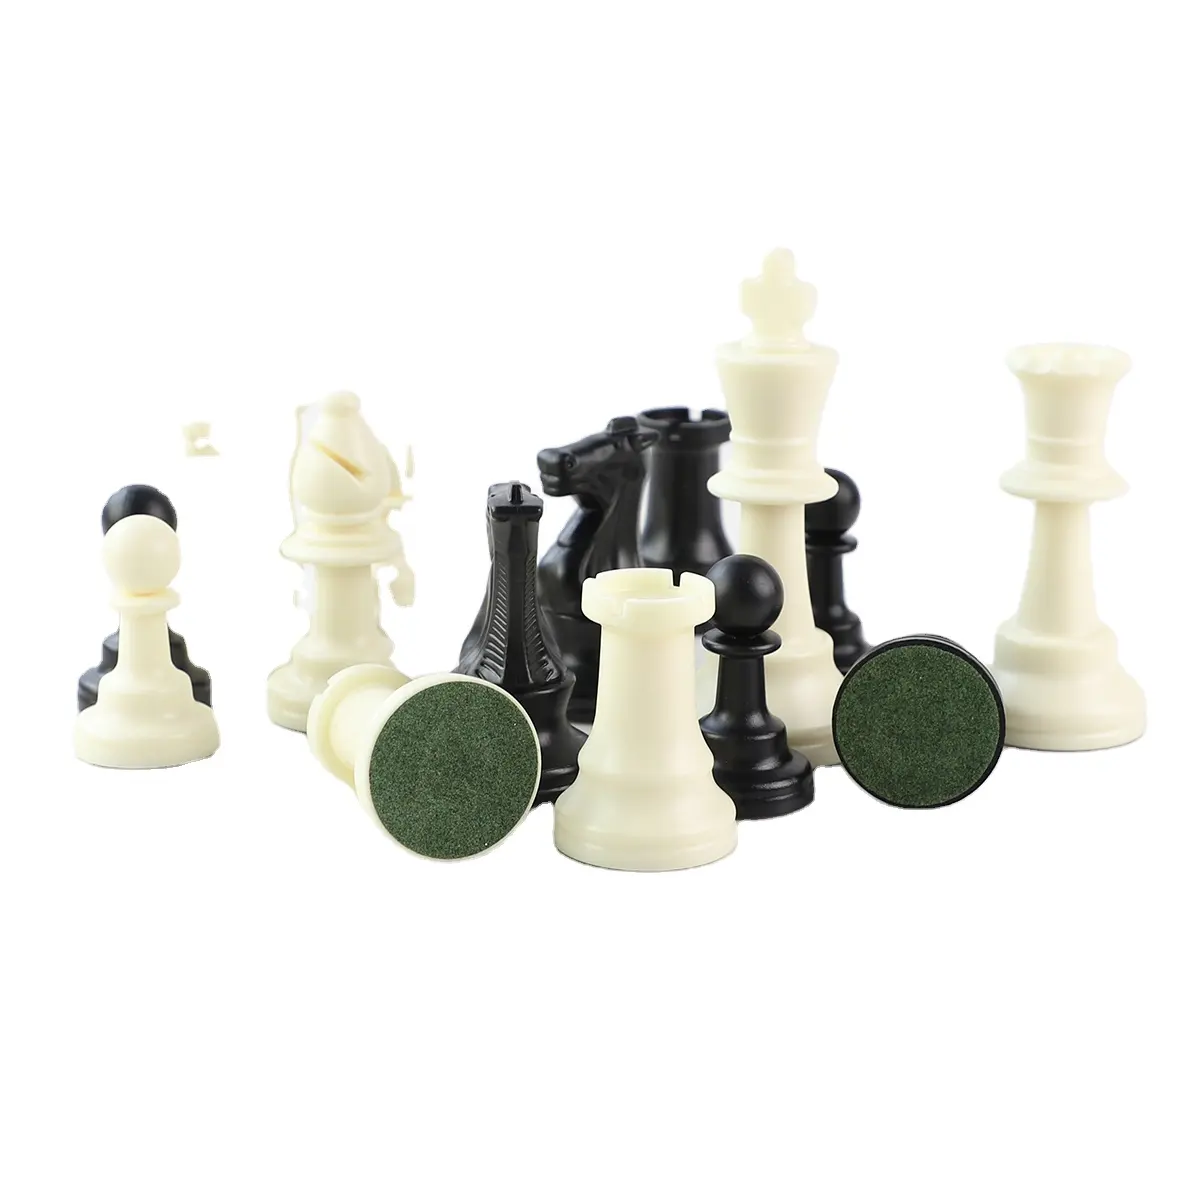 Fournisseurs d'usine de pièces d'échecs en plastique de luxe lisses, pièces d'échecs King/Pawns/Knight/Dragon